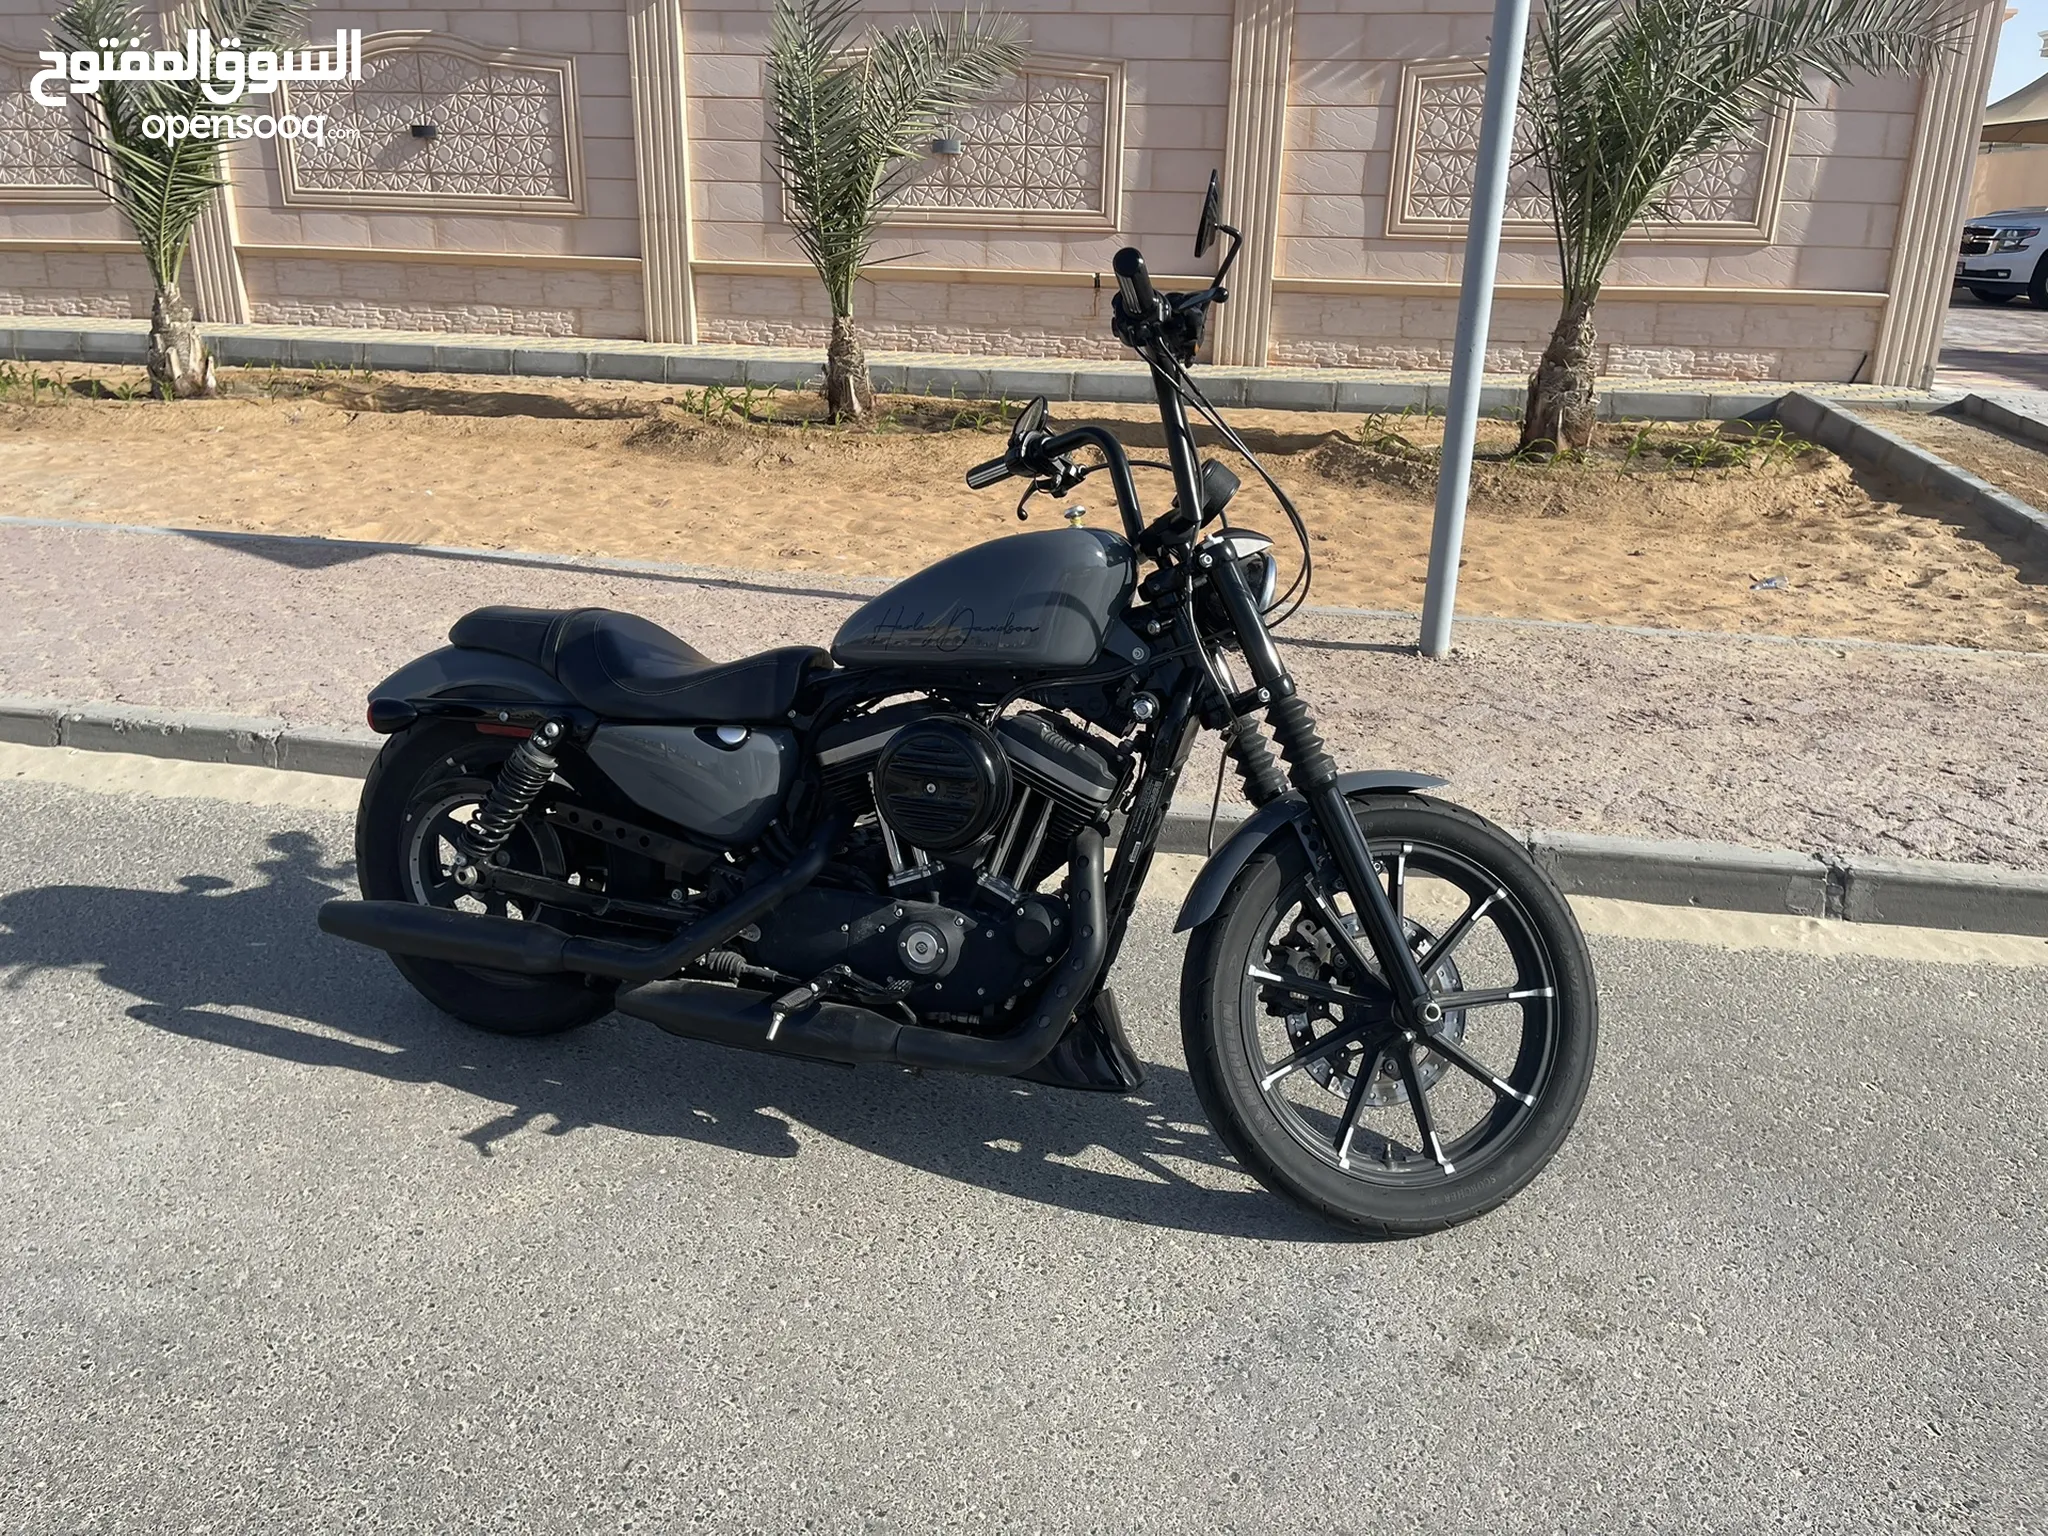 دباب هارلي ديفيدسون Iron 883 للبيع في الإمارات : دراجات مستعملة وجديدة :  ارخص الاسعار | السوق المفتوح